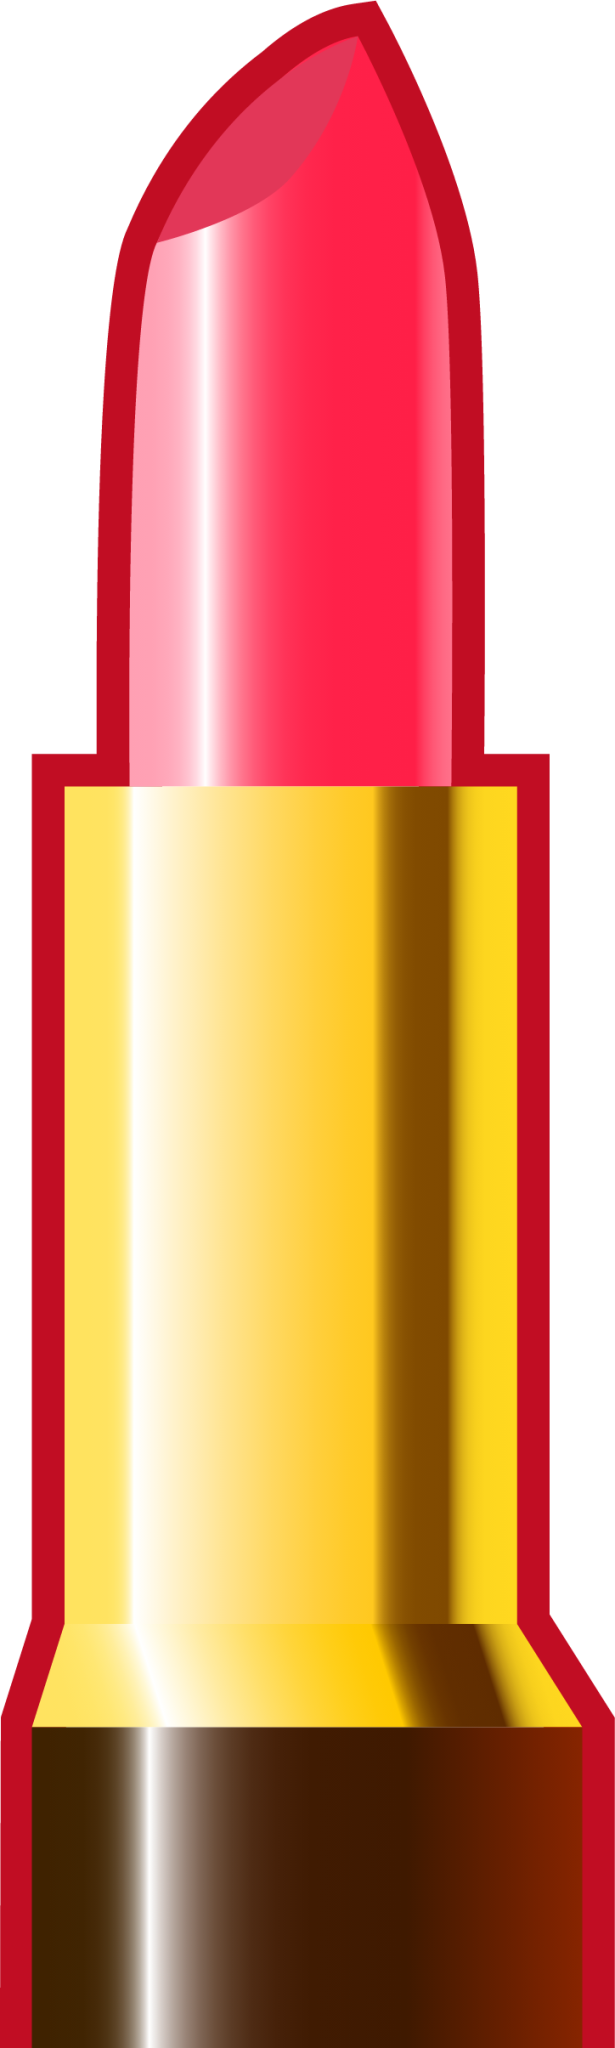 lipstick emoji